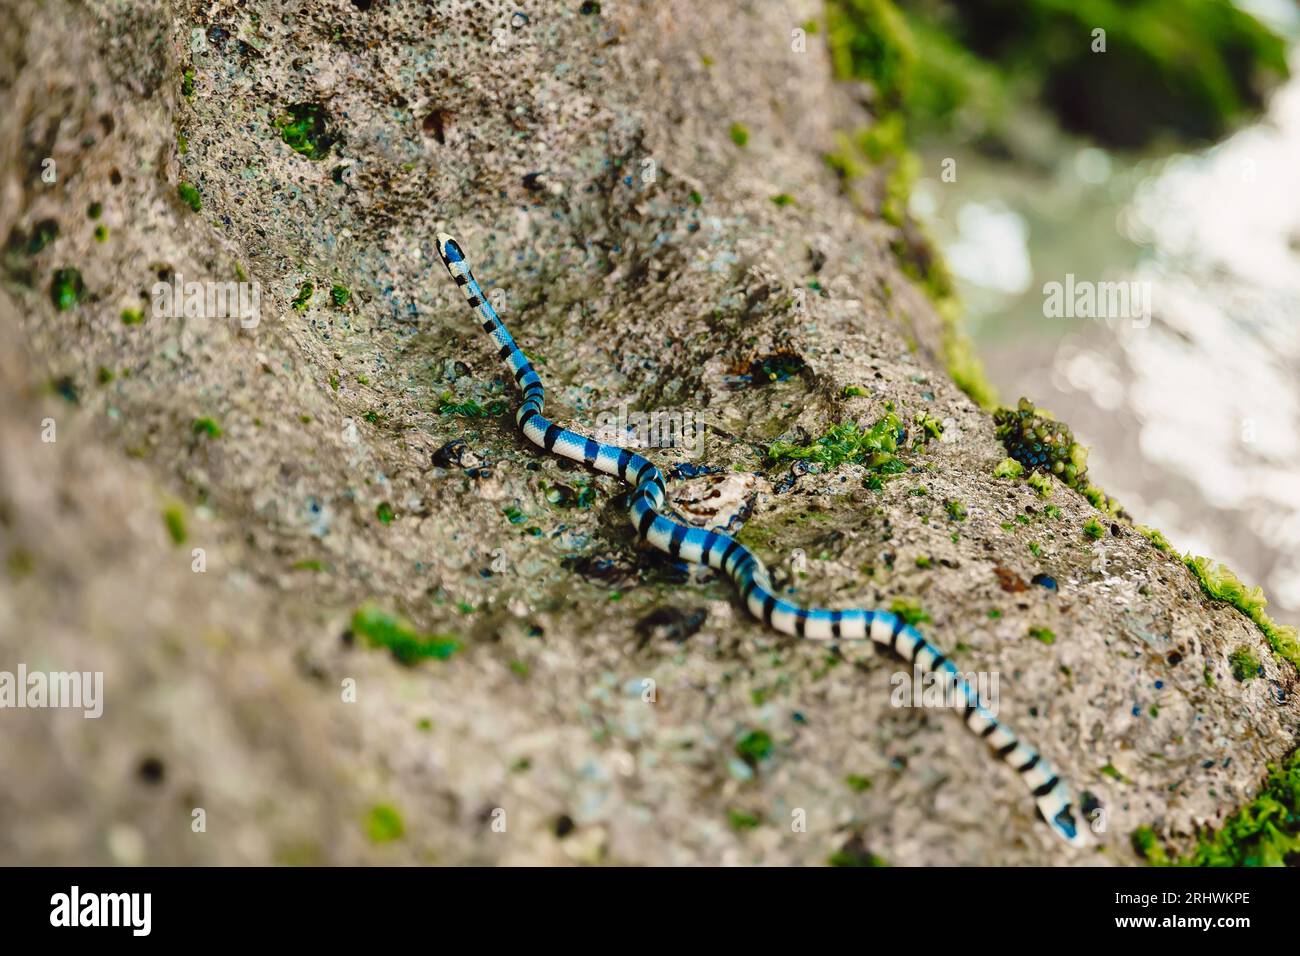 Gefährliche MeeresschlangenKrait auf Stein in Tropen. Giftiges Reptil im Freien Stockfoto